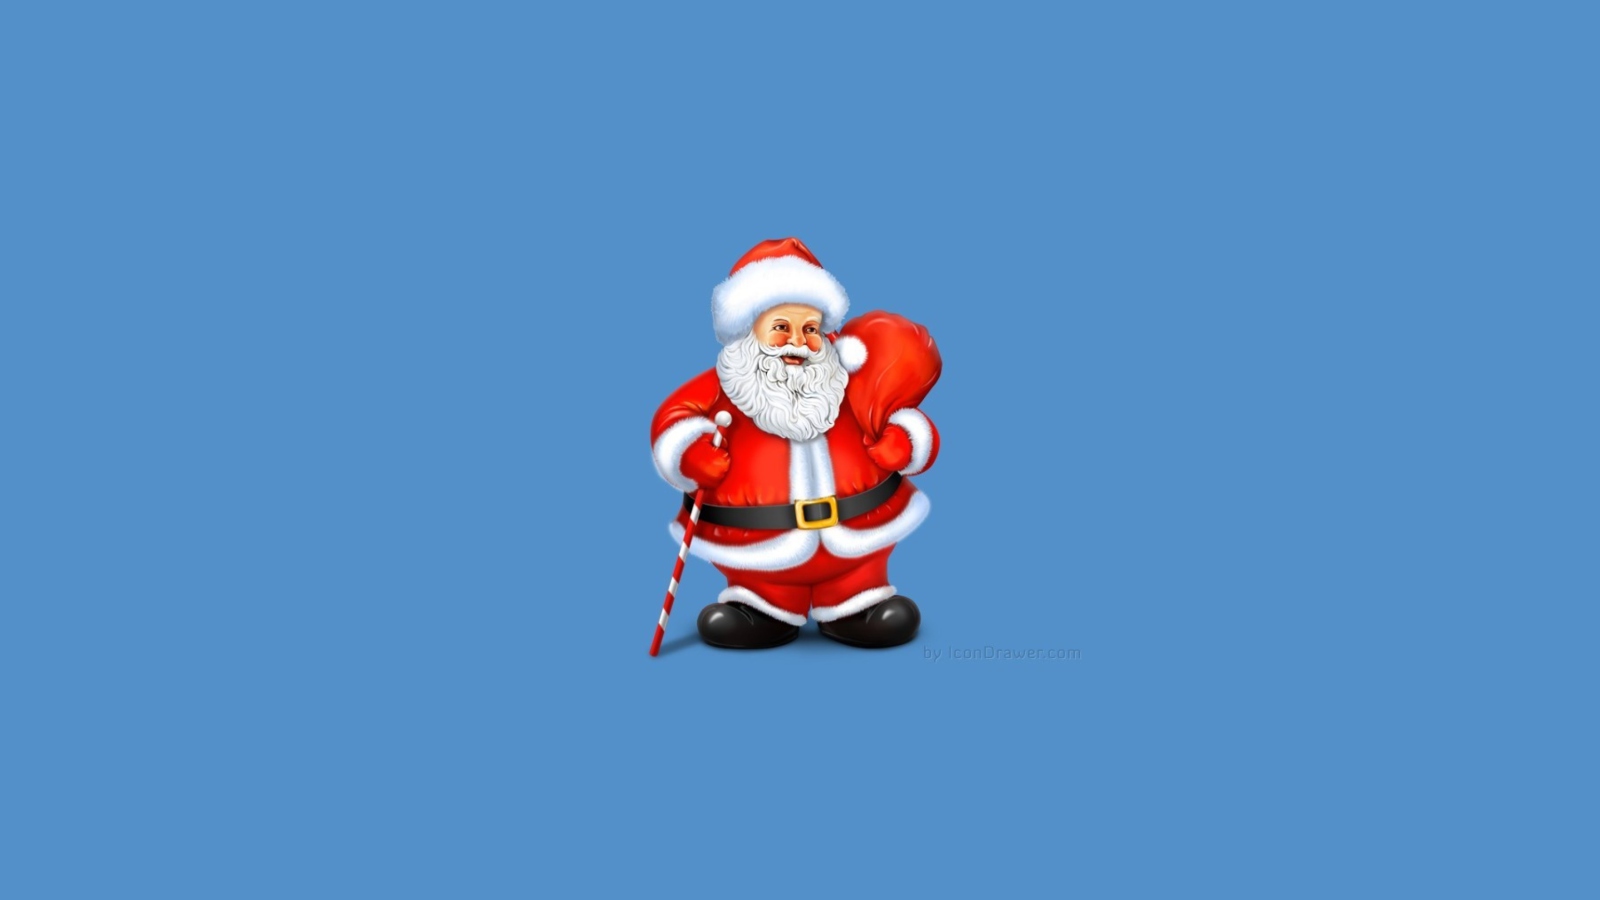 Santa Claus Illustration wallpaper 1600x900